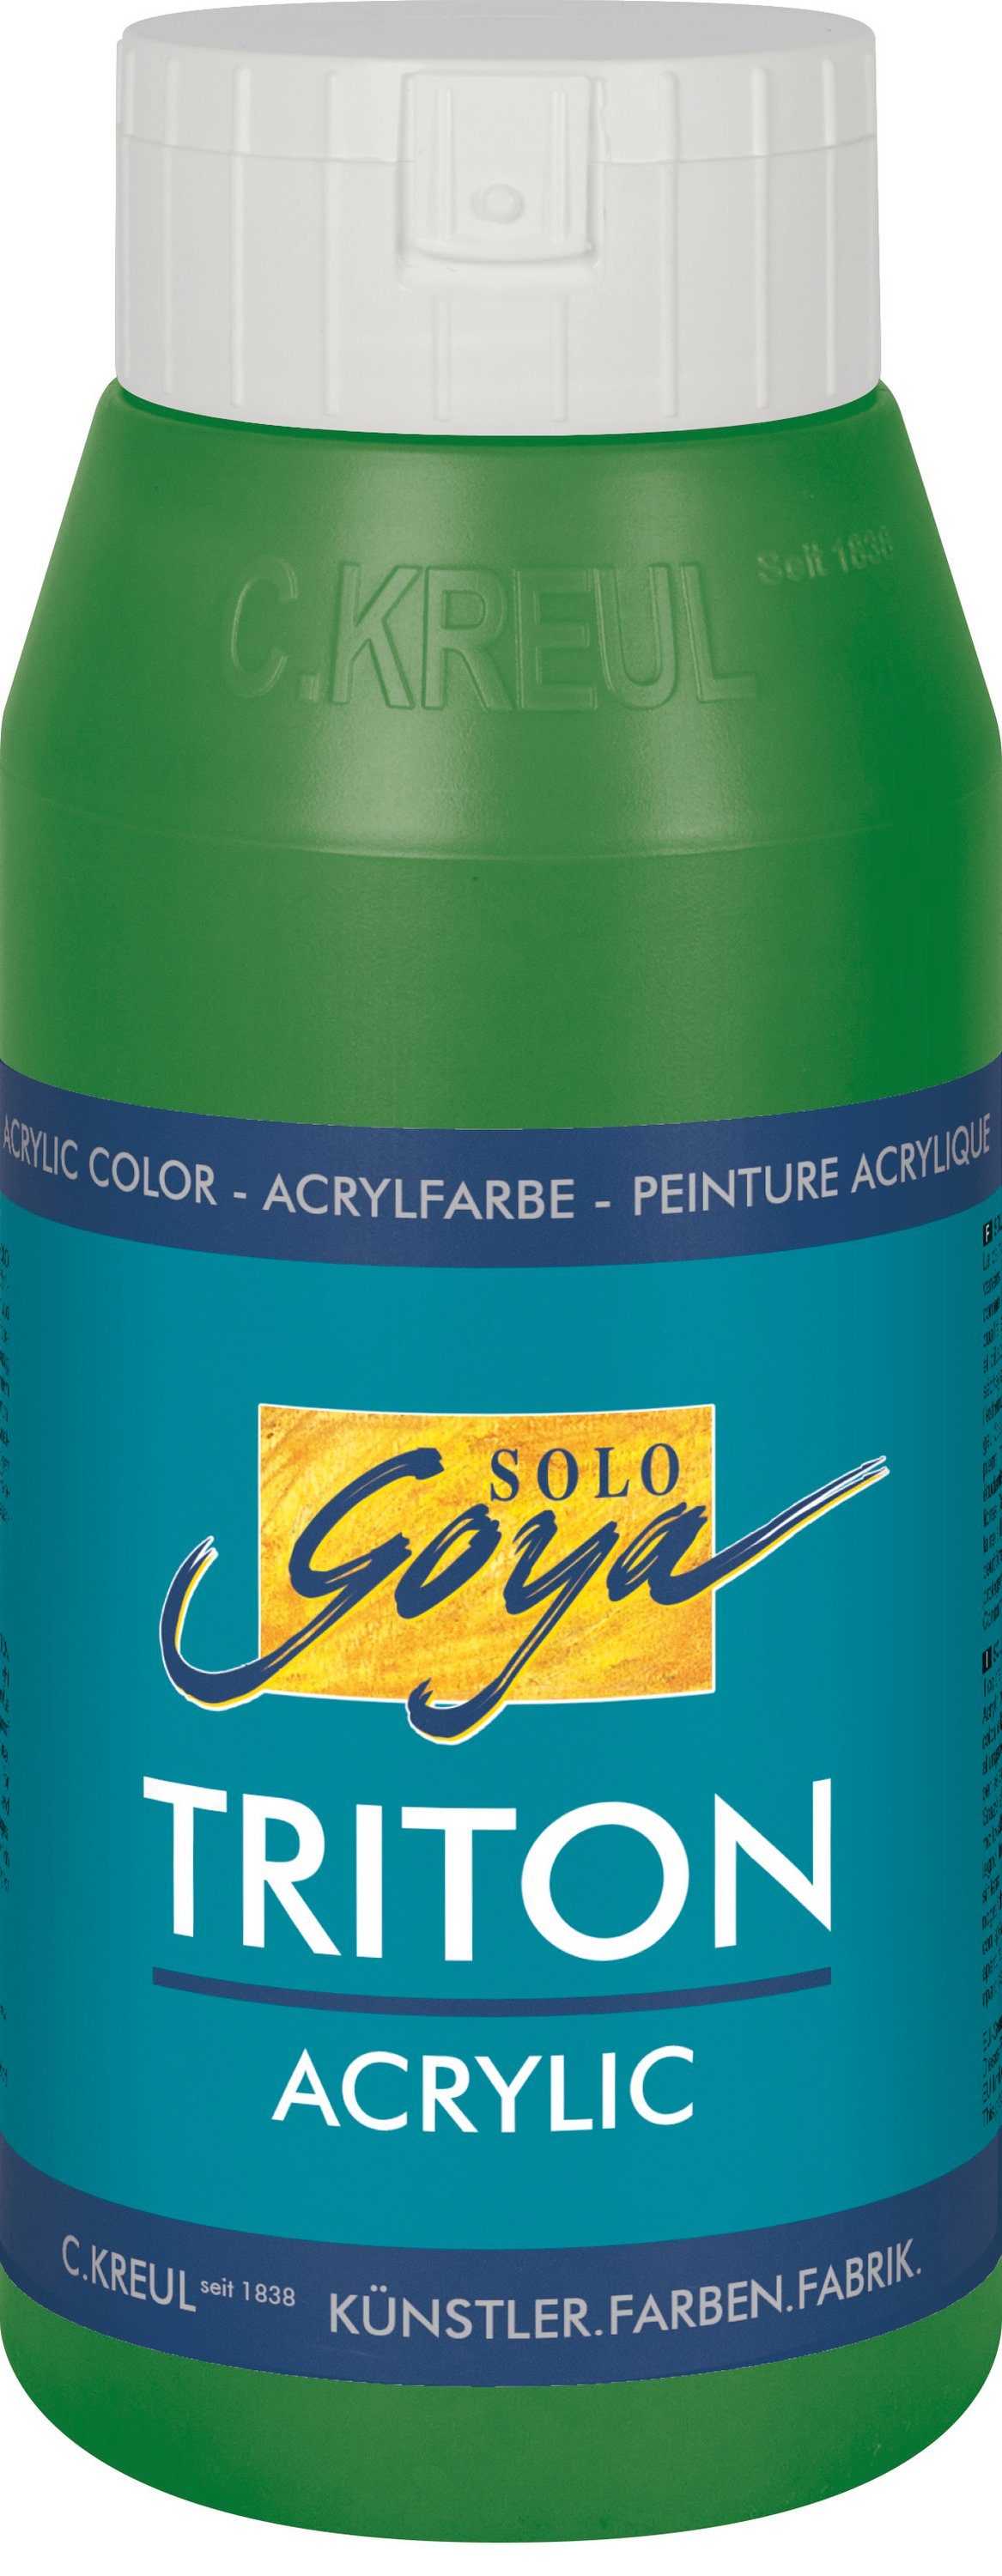 Kreul Acrylfarbe Solo Goya Triton ml 750 Laubgrün Acrylic